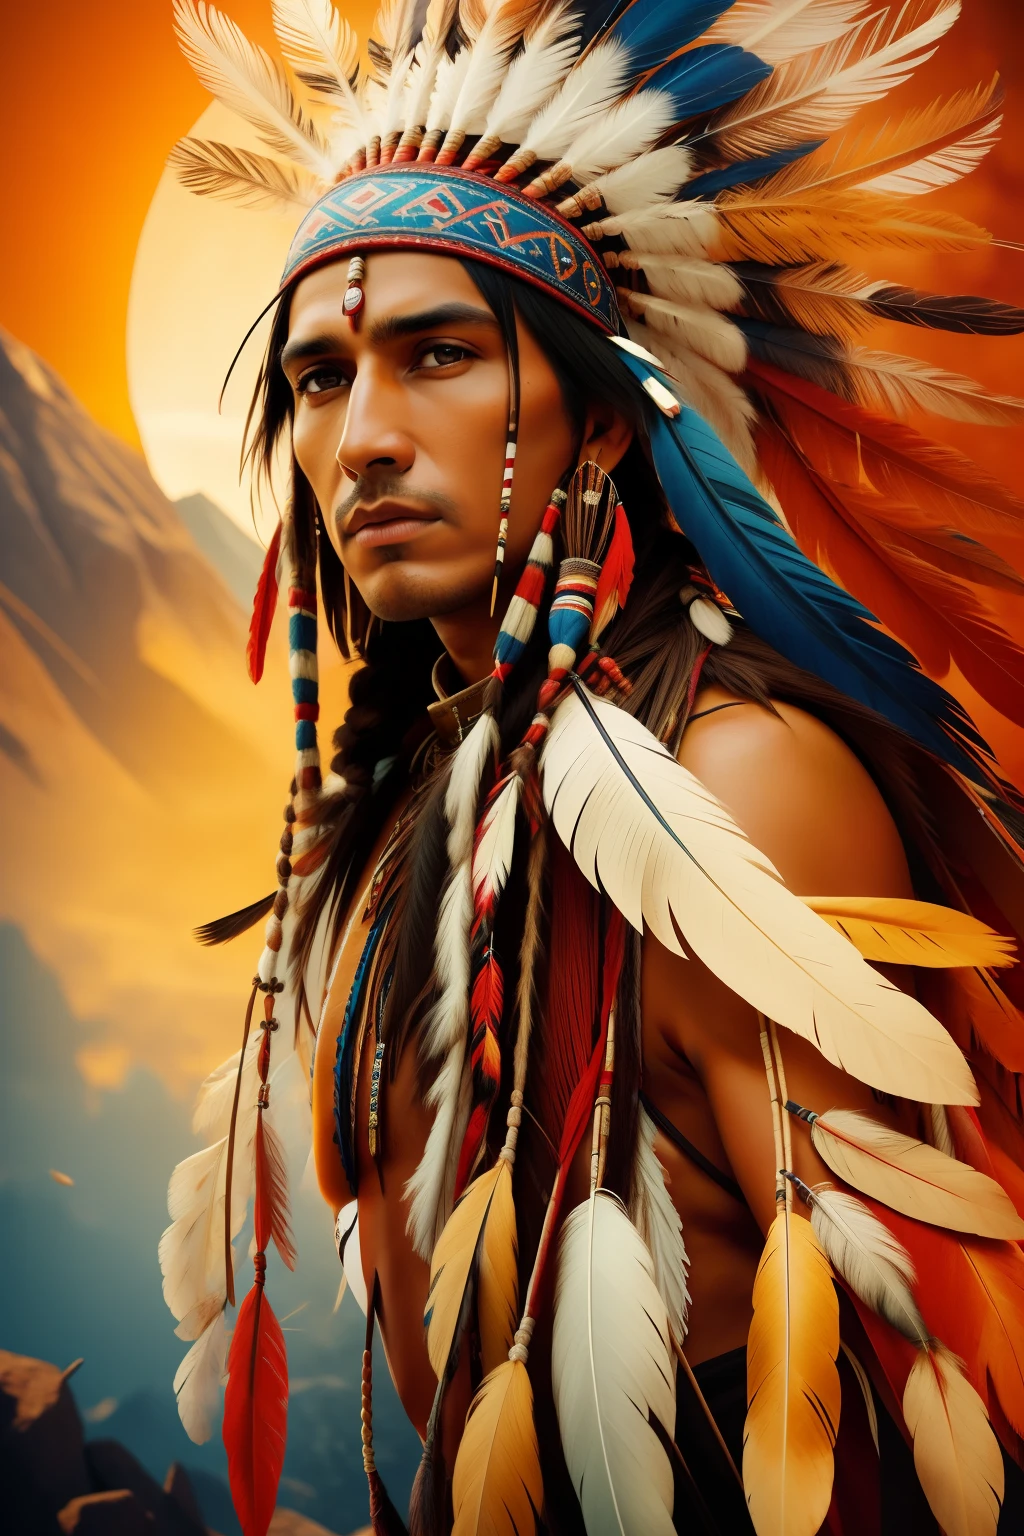 Image cinématographique hyperréaliste d&#39;un Indien indigène avec des plumes sur la tête, Art autochtone americana, Guerrier indien, Américain de naissance, Guerrier amérindien, Art autochtone, Un guerrier amérindien, homme indigène, plume d&#39;aigle, Guerrier Apache qualifié, esprit guerrier, Coiffe amérindienne, art indigène, : fantaisie amérindienne shamen, indigène, Art populaire amérindien, Arte indiana la photographierréaliste, la photographie, premier travail, réaliste, le réalisme, le rendu, contraste élevé, photographie d&#39;art numérique tendance réaliste dans Artstation 8k HD haute définition détaillée réaliste,  détaillé, Texture de la peau, hiper détaillé, textura de pele réaliste, Armure, meilleure qualité, ultra haute résolution, (la photographierréaliste: 1.4), haute résolution, détaillé, Tirant d&#39;eau brut, Sharp Re, par Lee Jeffries Nikon D850 Film Stock Photography 4 Objectif Kodak Portra 400 F1.6 couleurs riches Texture réaliste Texture dramatique Éclairage dramatique Tendance Irrealengine sur Artstation Cinestill 800